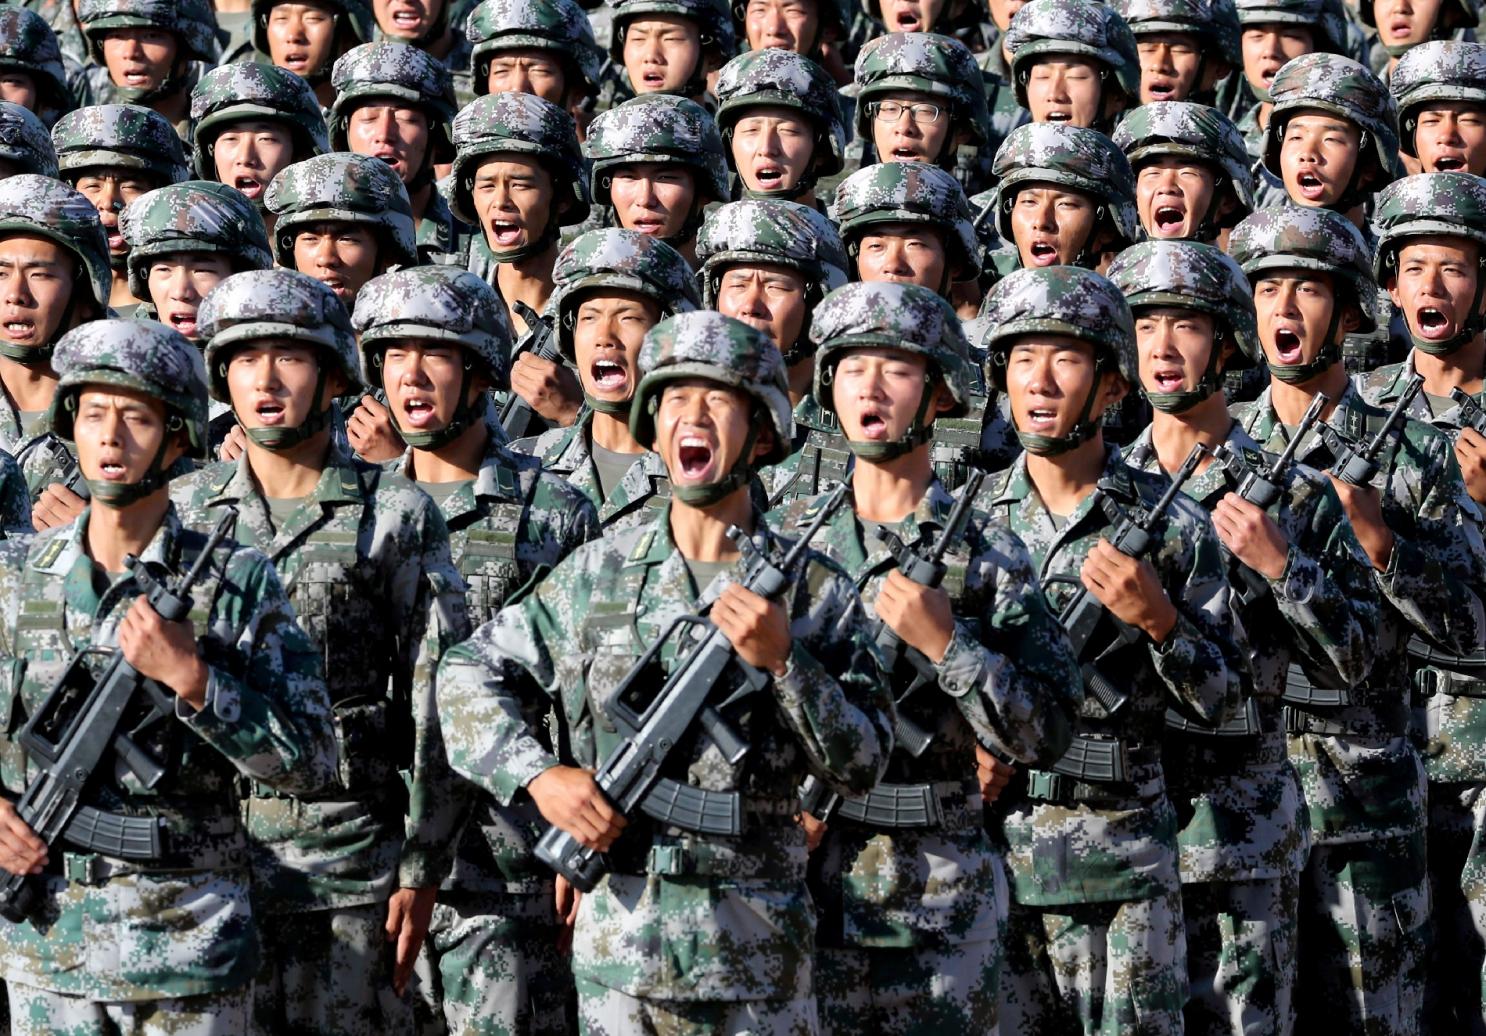 चीनको सैनिक बजेटमा ६.६ प्रतिशत वृद्धि